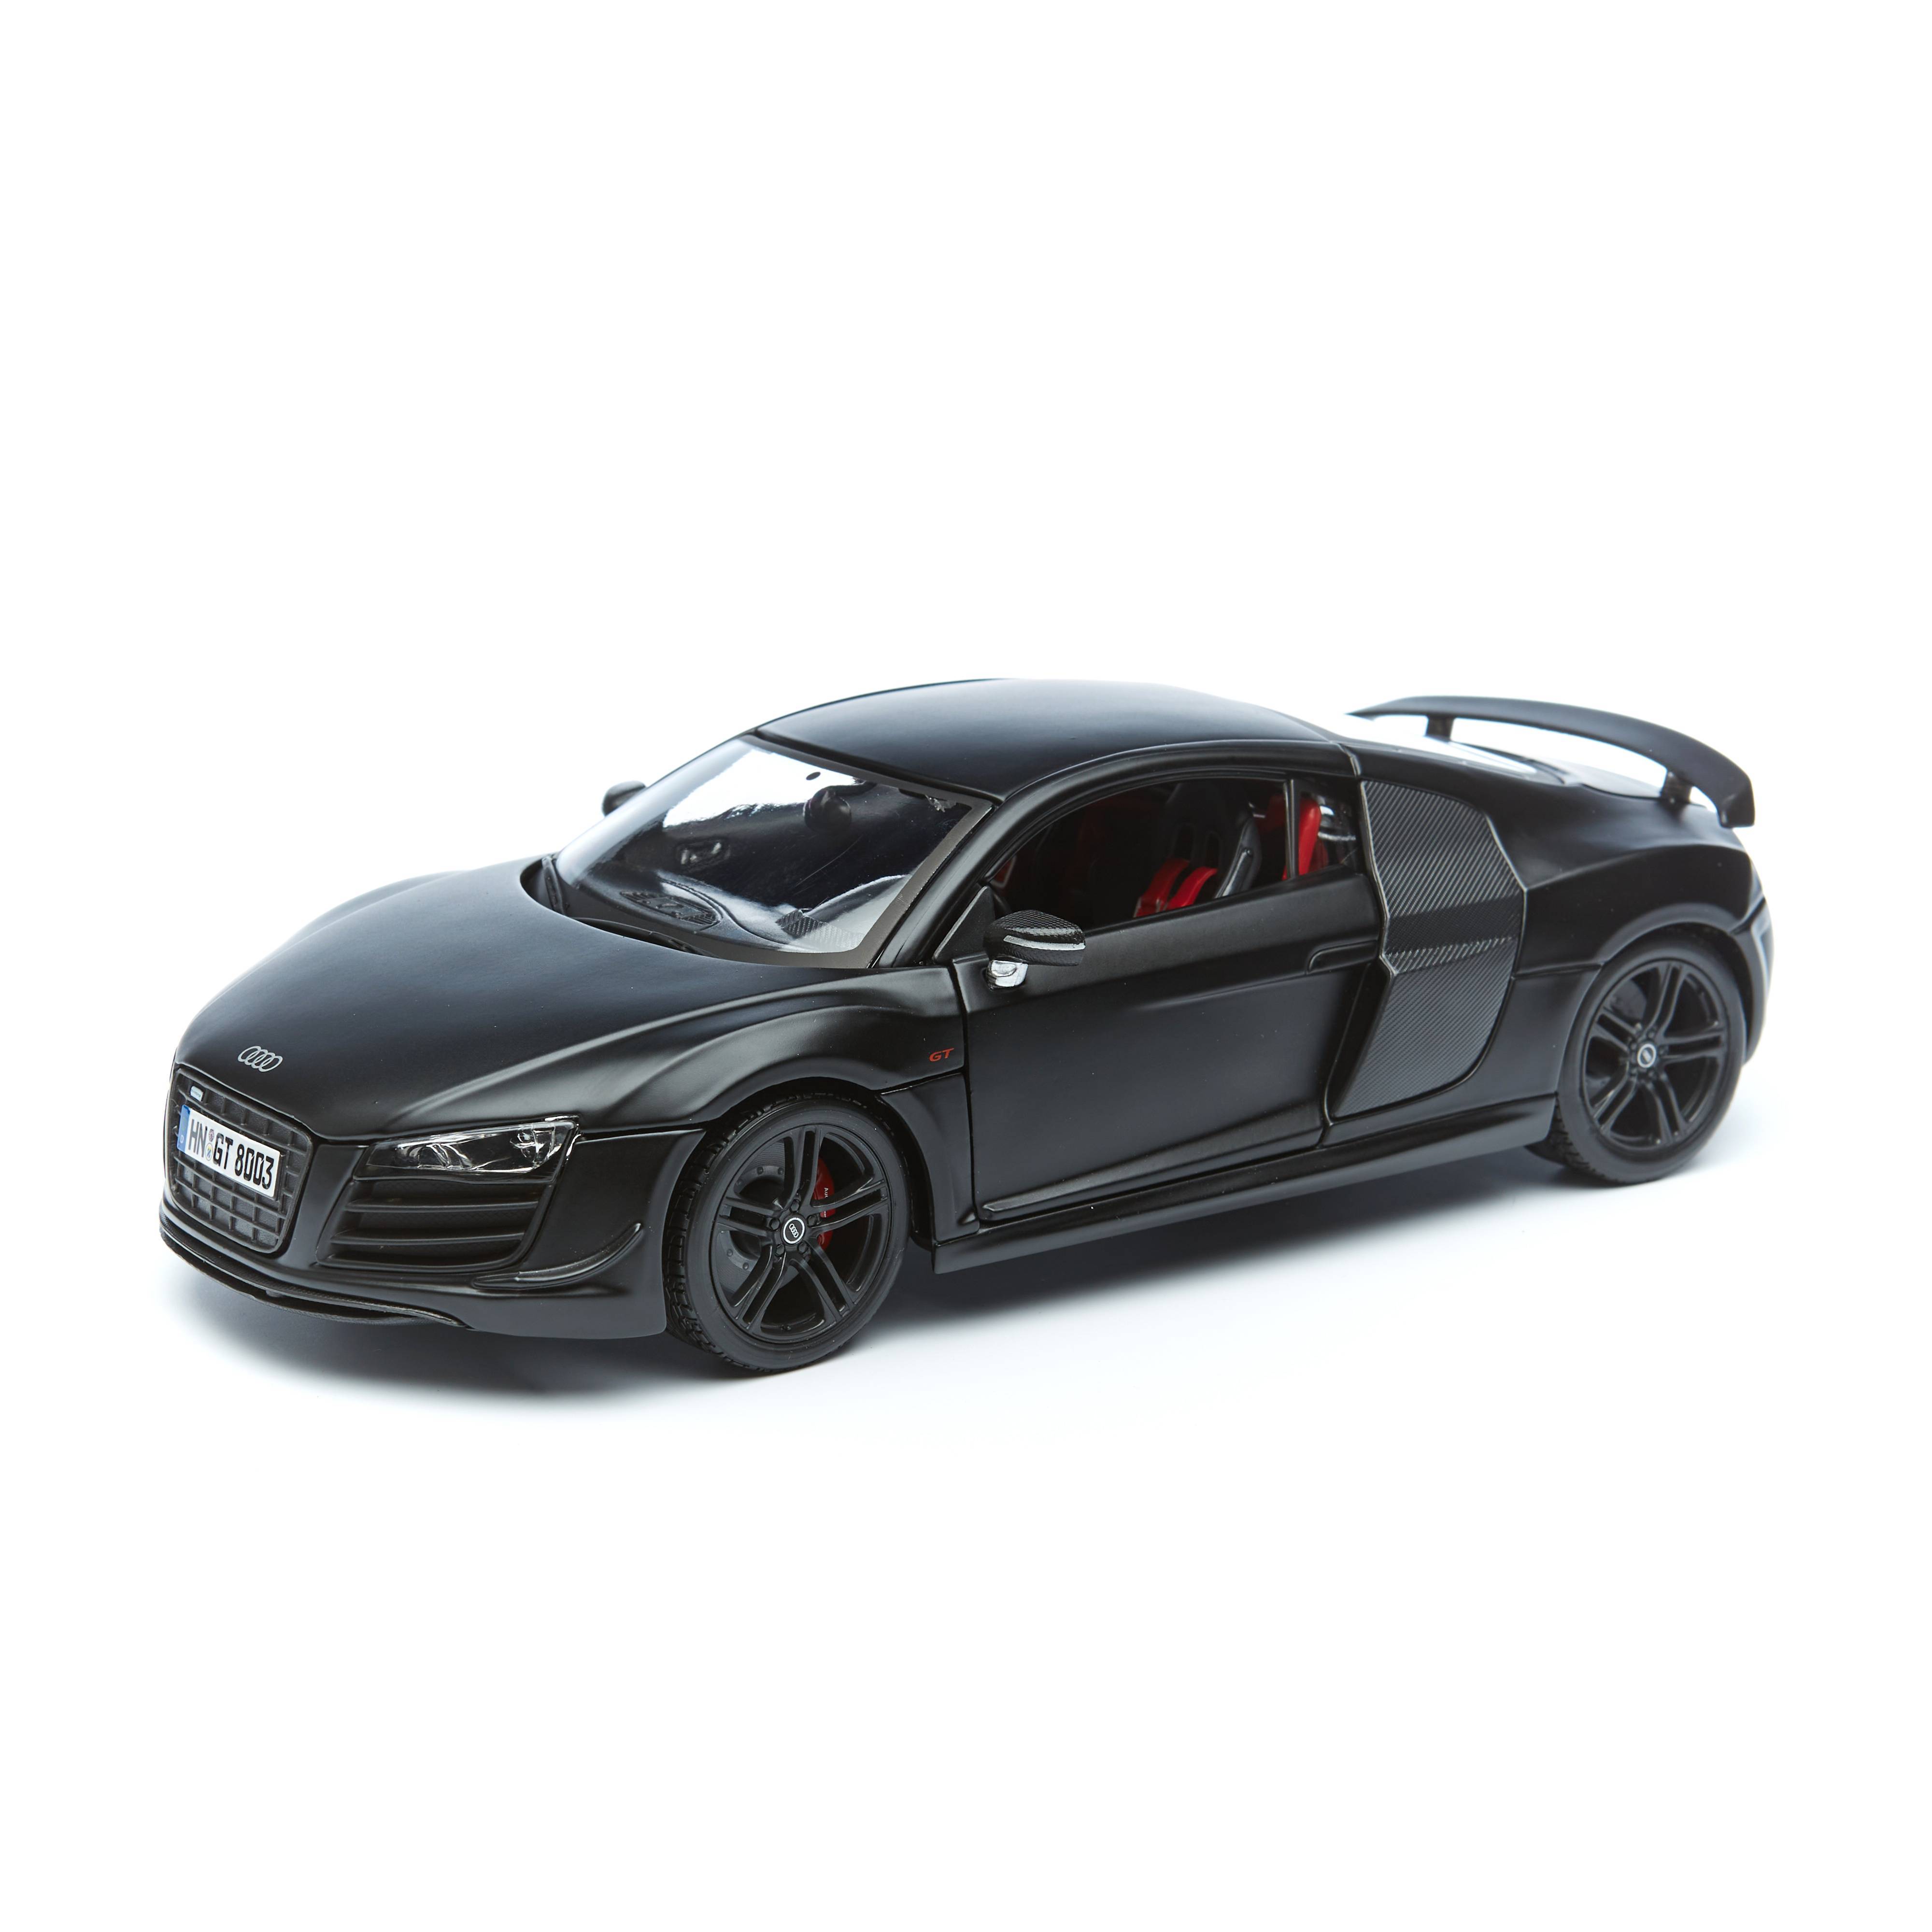 Maisto Машинка Audi R8 GT, 1:18 чёрная 31395